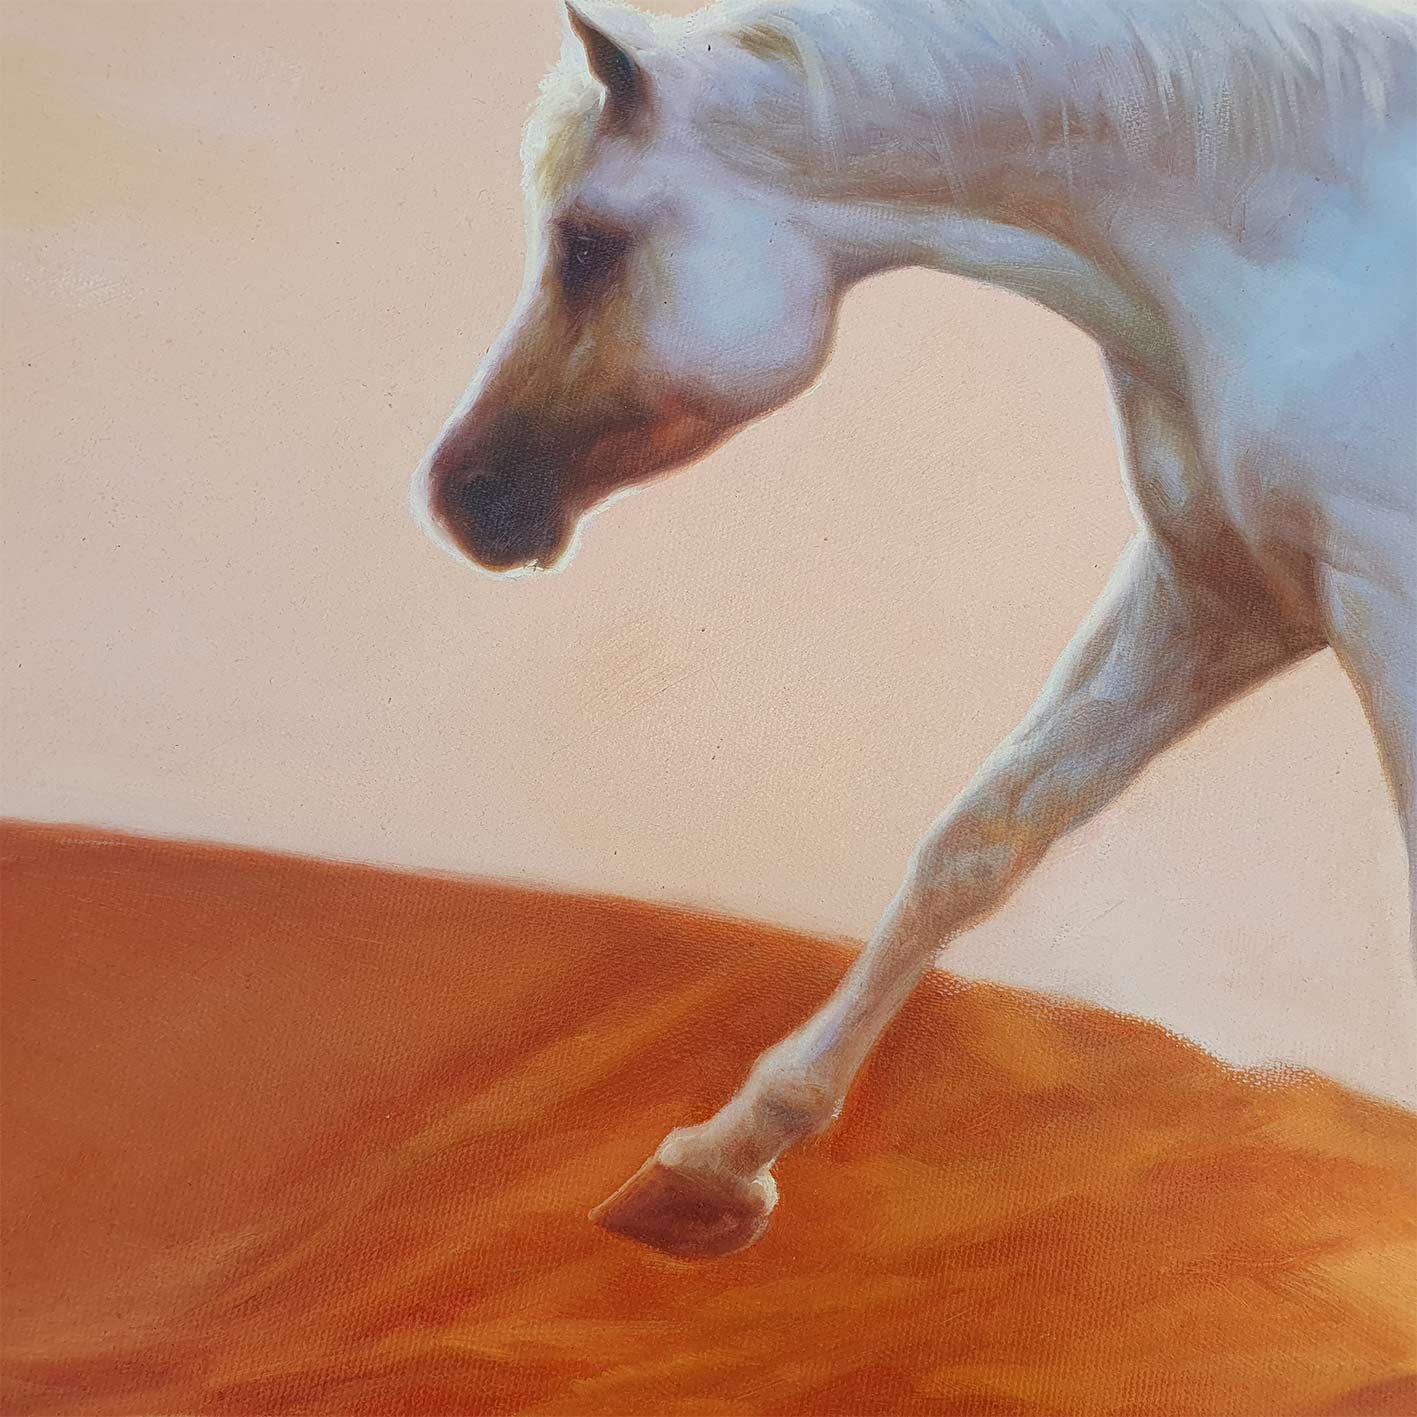 Wüstenpferd-Gemälde 100x80 cm